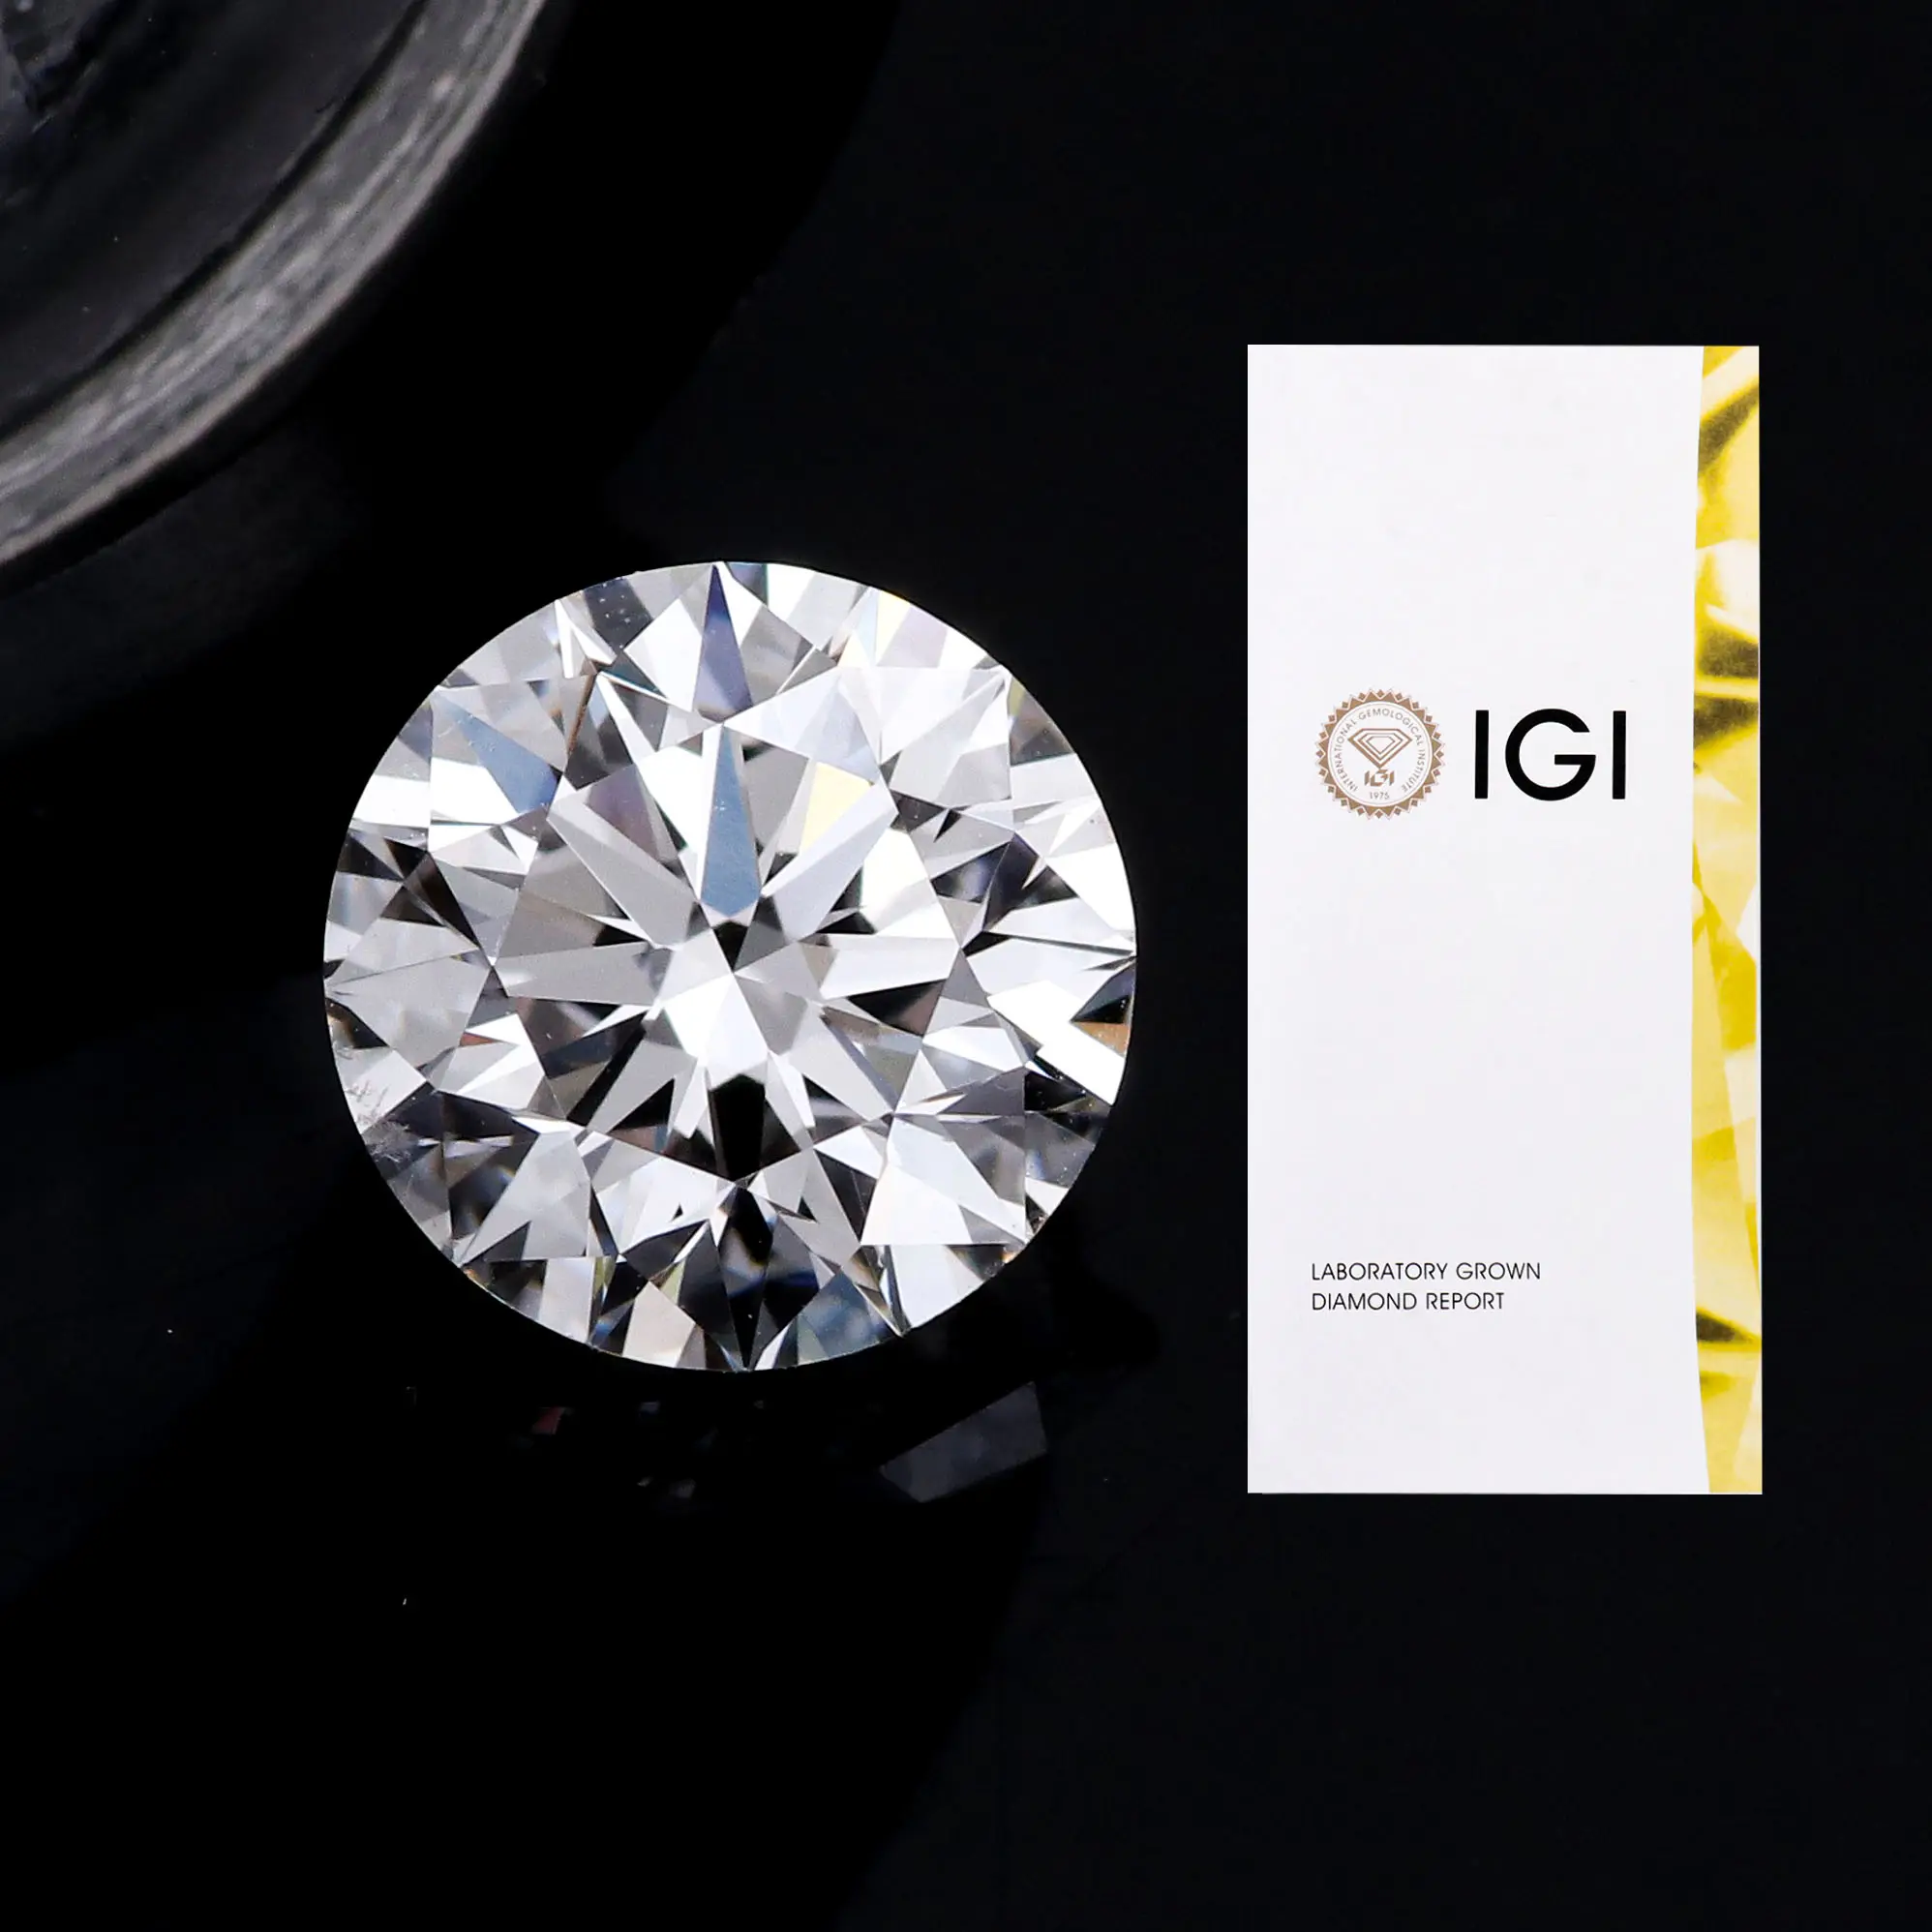 2.6ct IGI сертификат круглой бриллиантовой огранки сердечно-сосудистых заболеваний лаборатории grwon бриллиантов VS2 EX Cut польские, синтетический алмаз, оптовая продажа